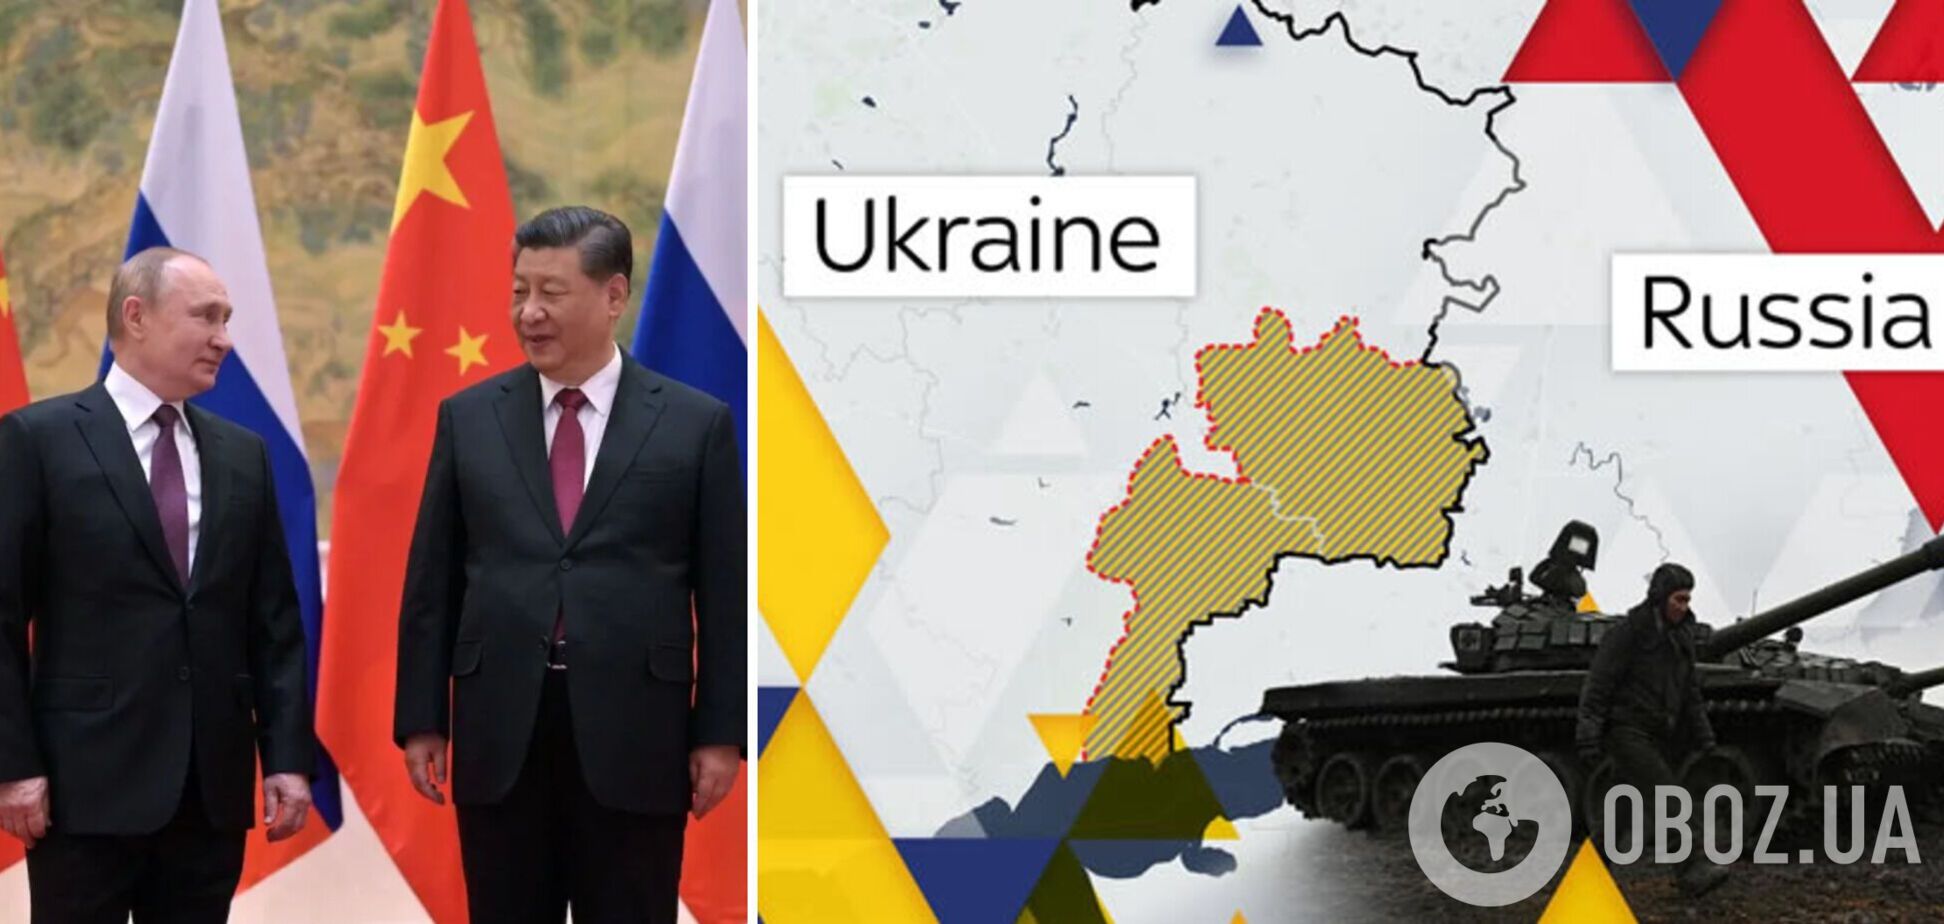 Стремятся истощить РФ затяжной войной: в Китае назвали США 'главным вдохновителем' кризиса в Украине – Reuters